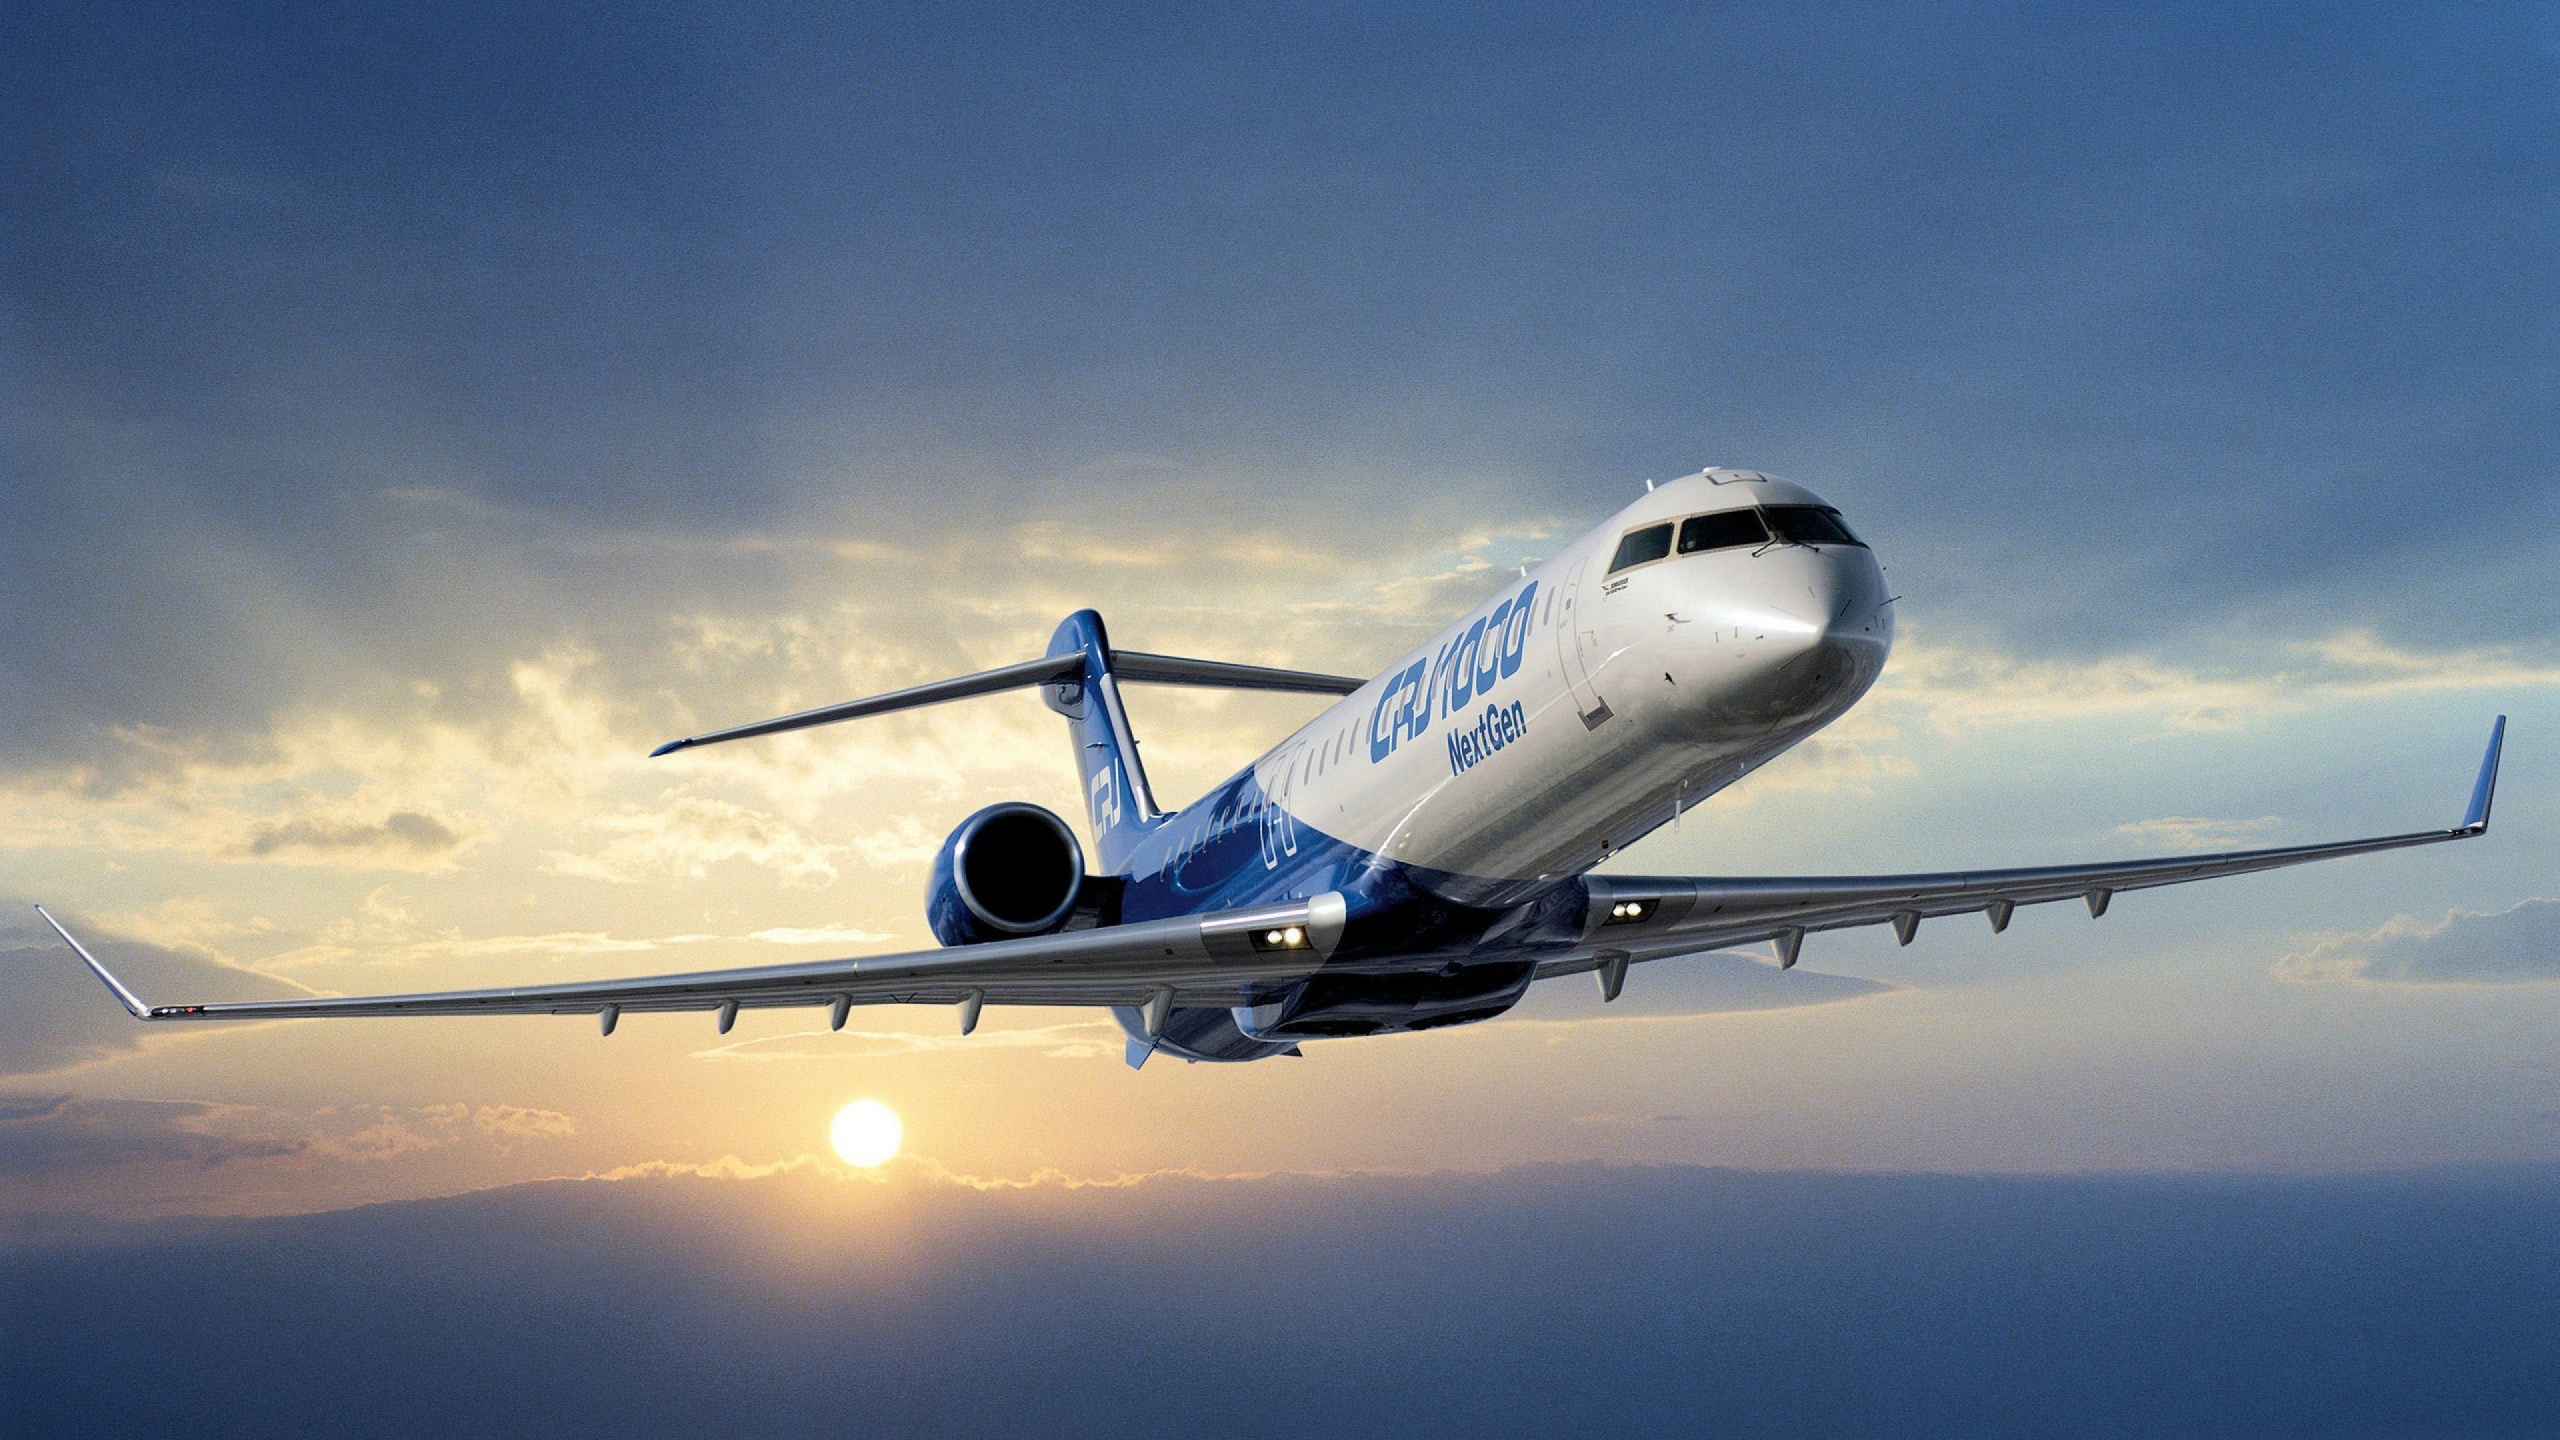 Обои самолет, самолеты, авиалайнер, авиация, воздушное путешествие в разрешении 2560x1440